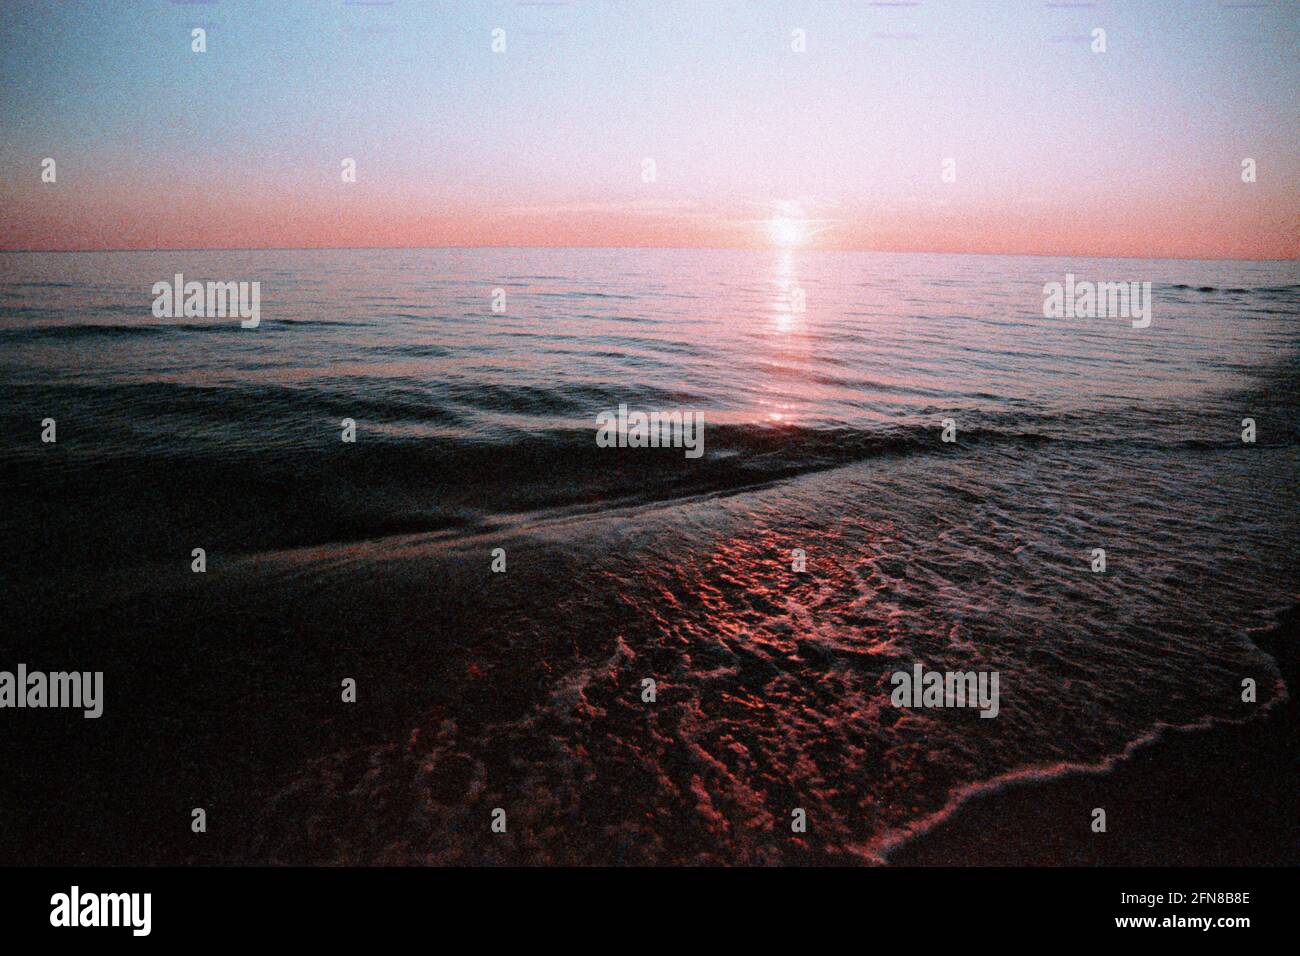 Coucher de soleil sur la mer Baltique, le film a des grains. Coucher de soleil rouge sur le bord de la mer. Fond marin dans un style vintage. Soleil, ciel, des vagues et du sable. Banque D'Images